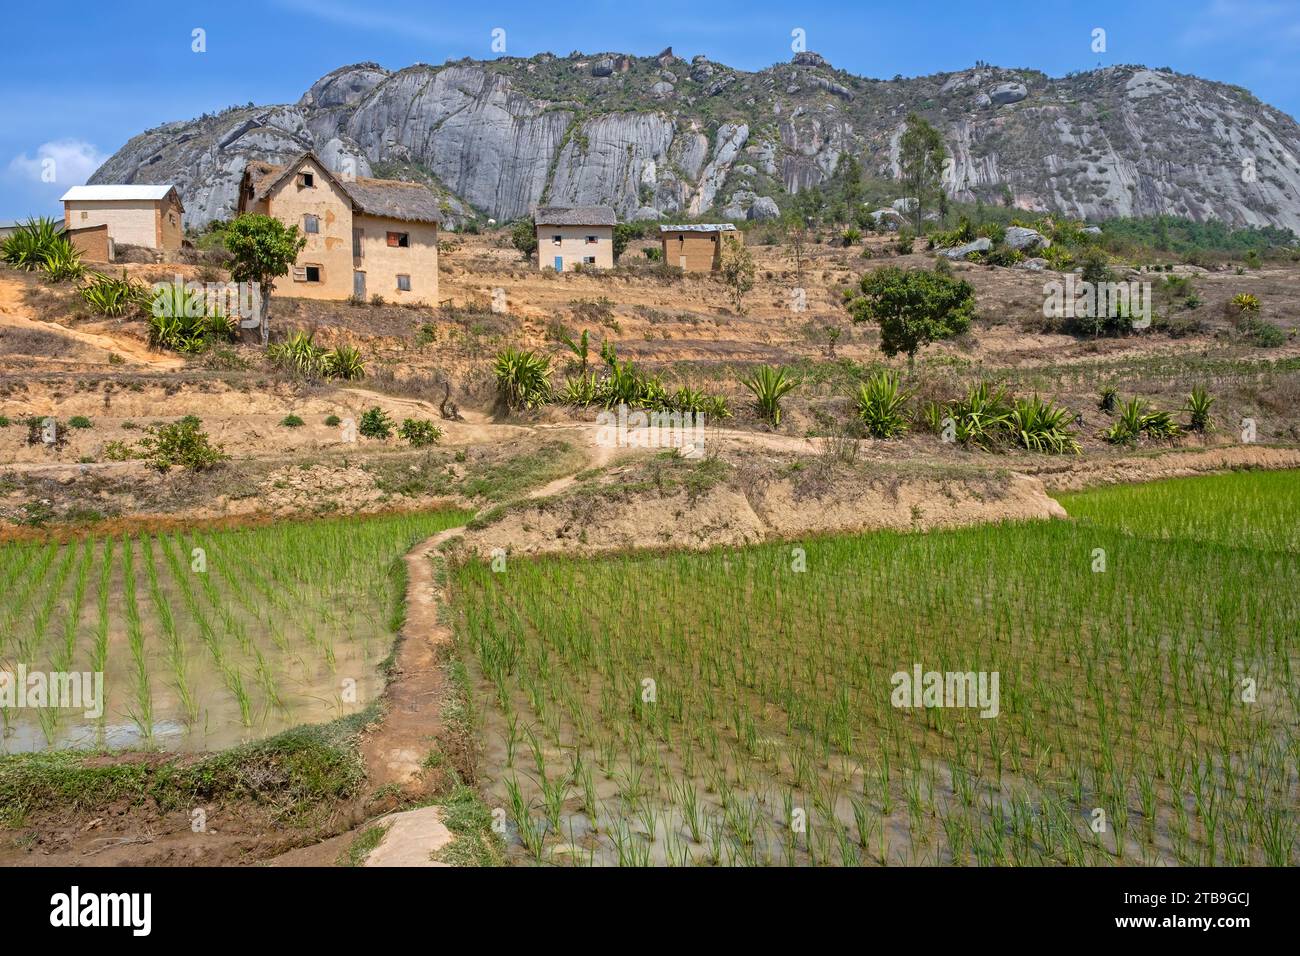 Betsileo ländliches Dorf auf Hügeln und Reisfeldern in der Haute Matsiatra Region, Central Highlands, Madagaskar, Afrika Stockfoto